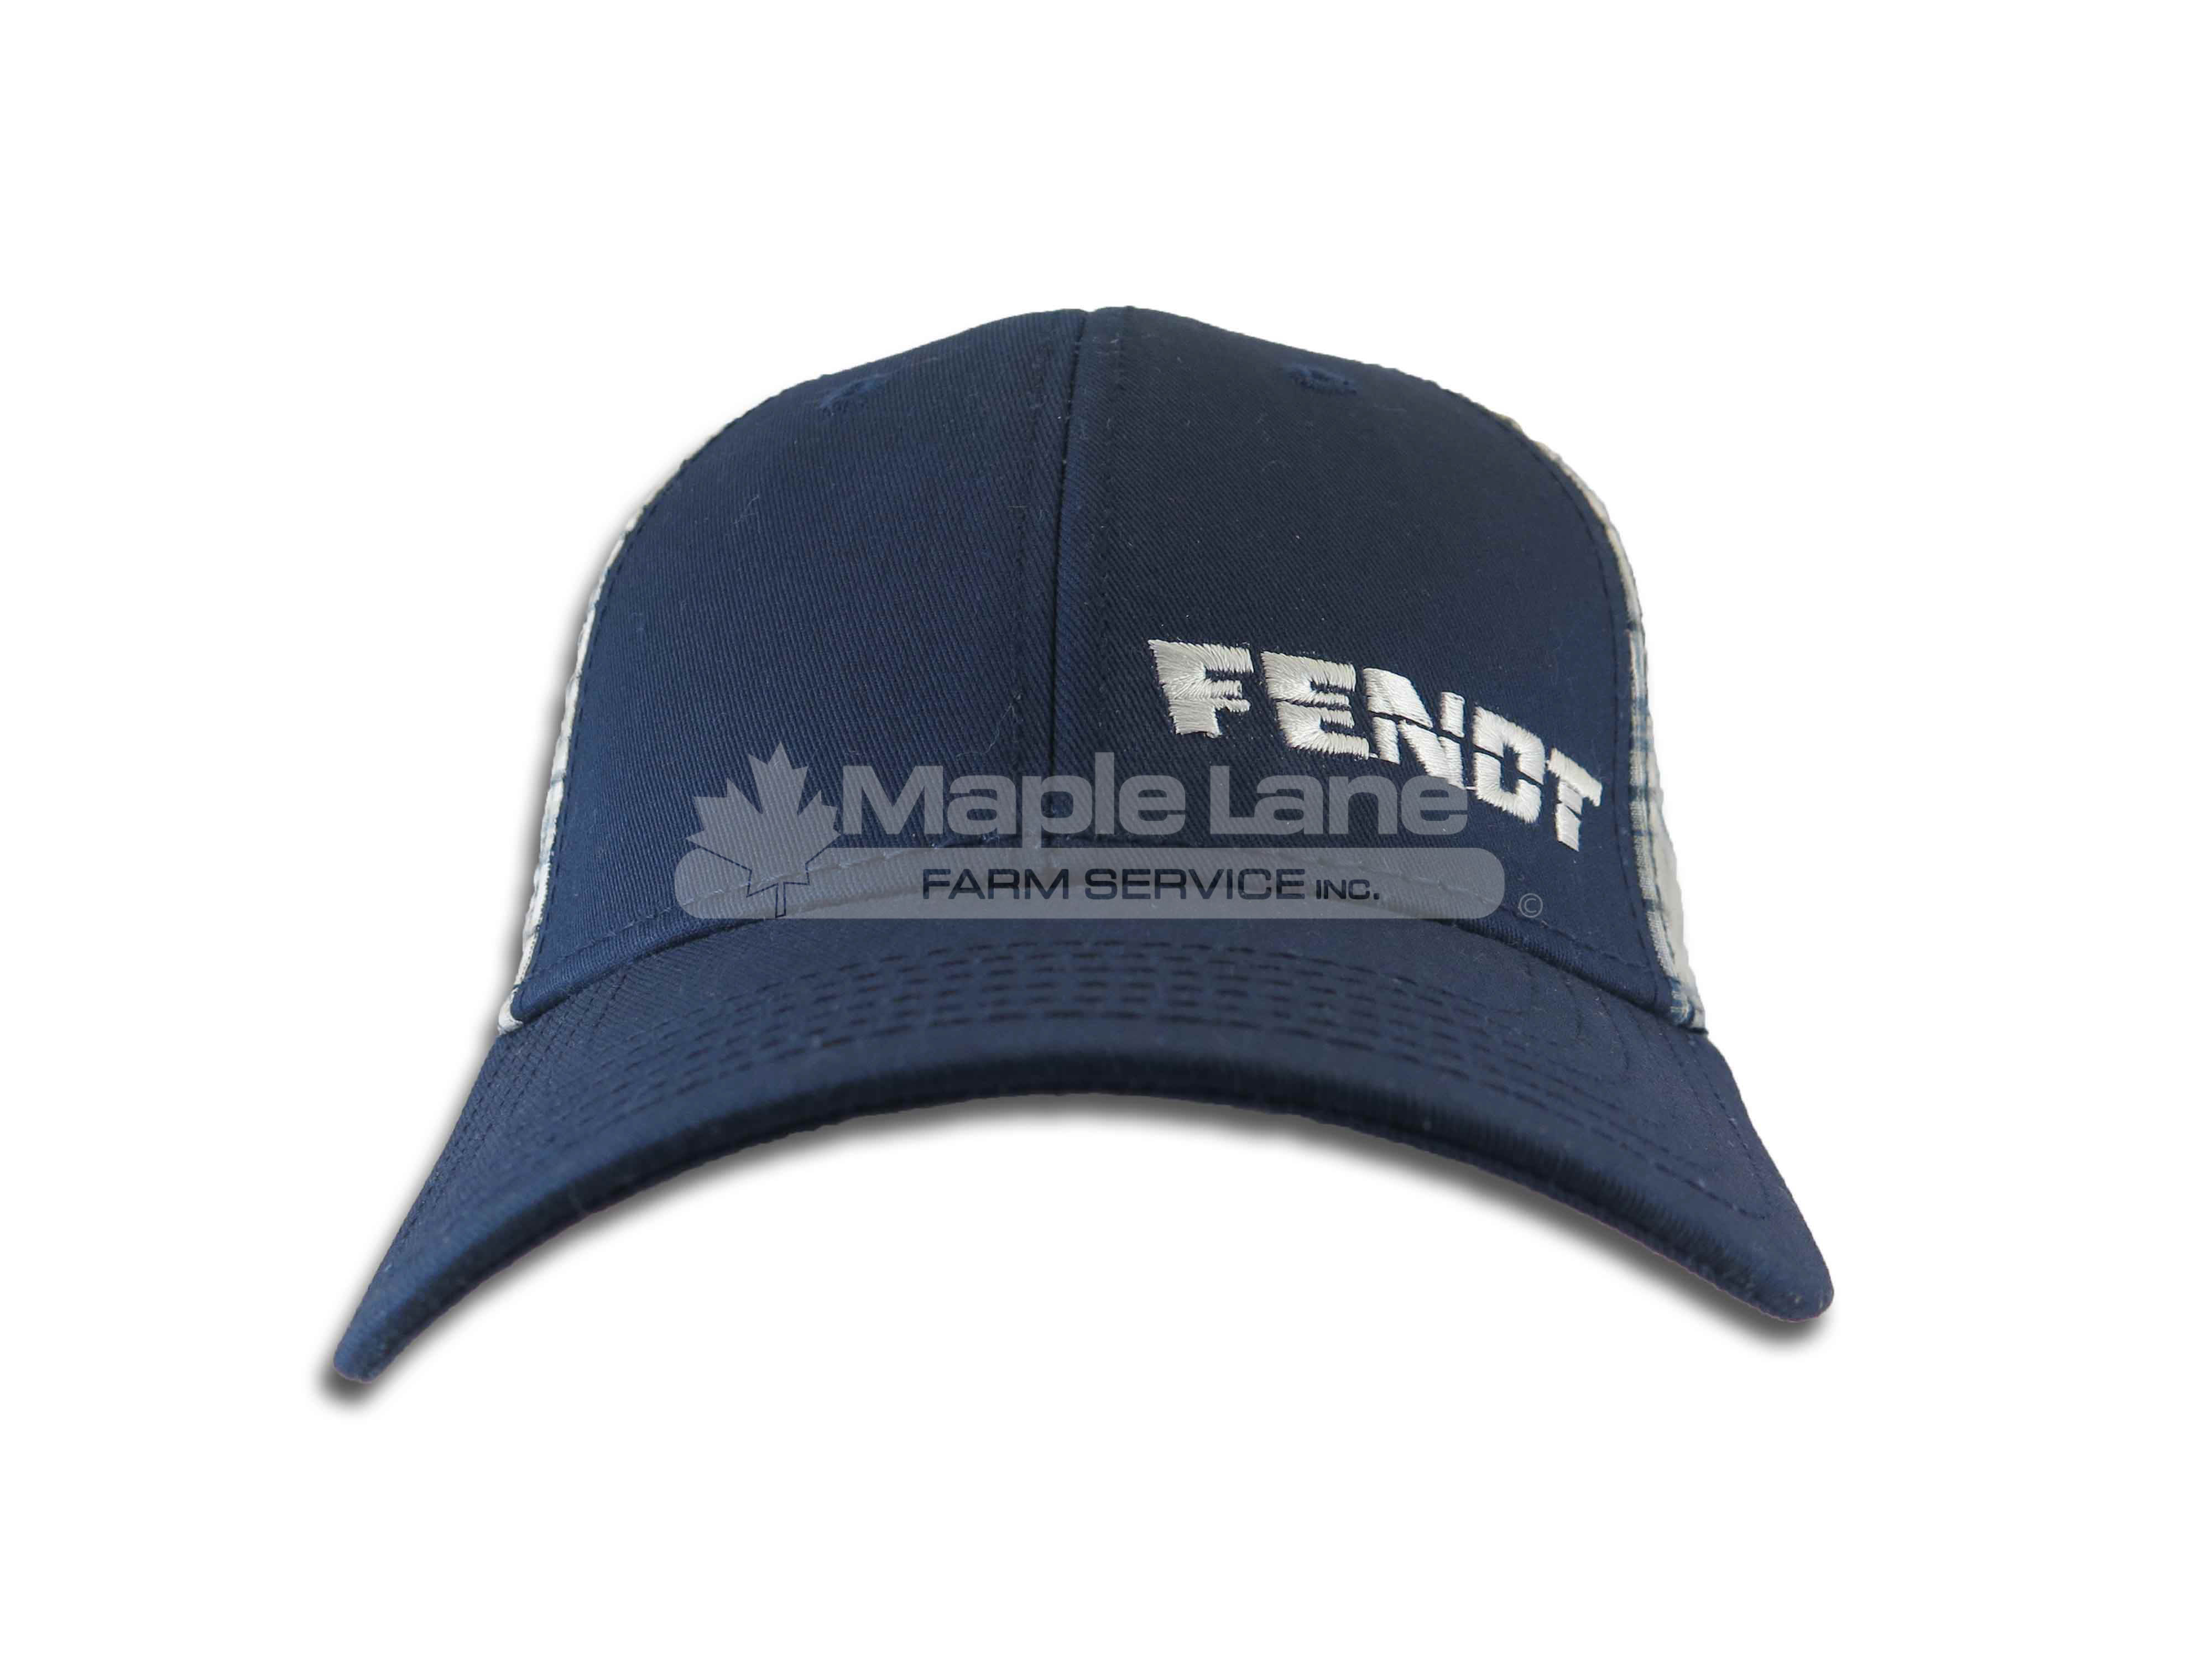 fendt blue plaid hat